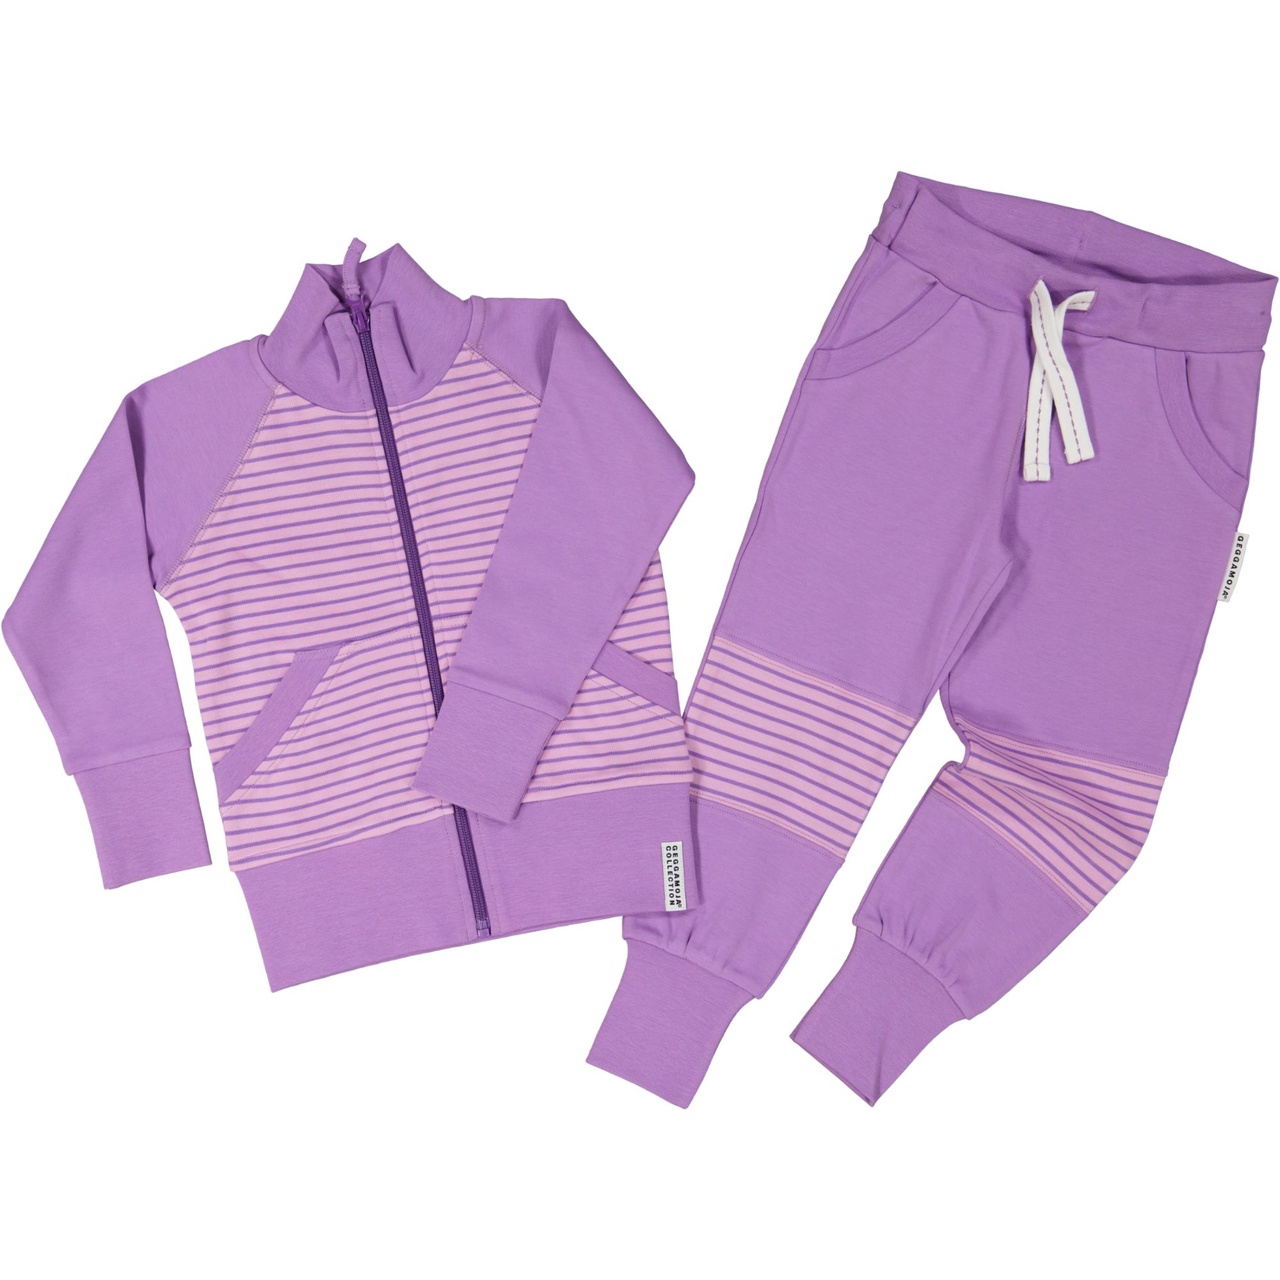 Zip sweater L.purple/purple 16